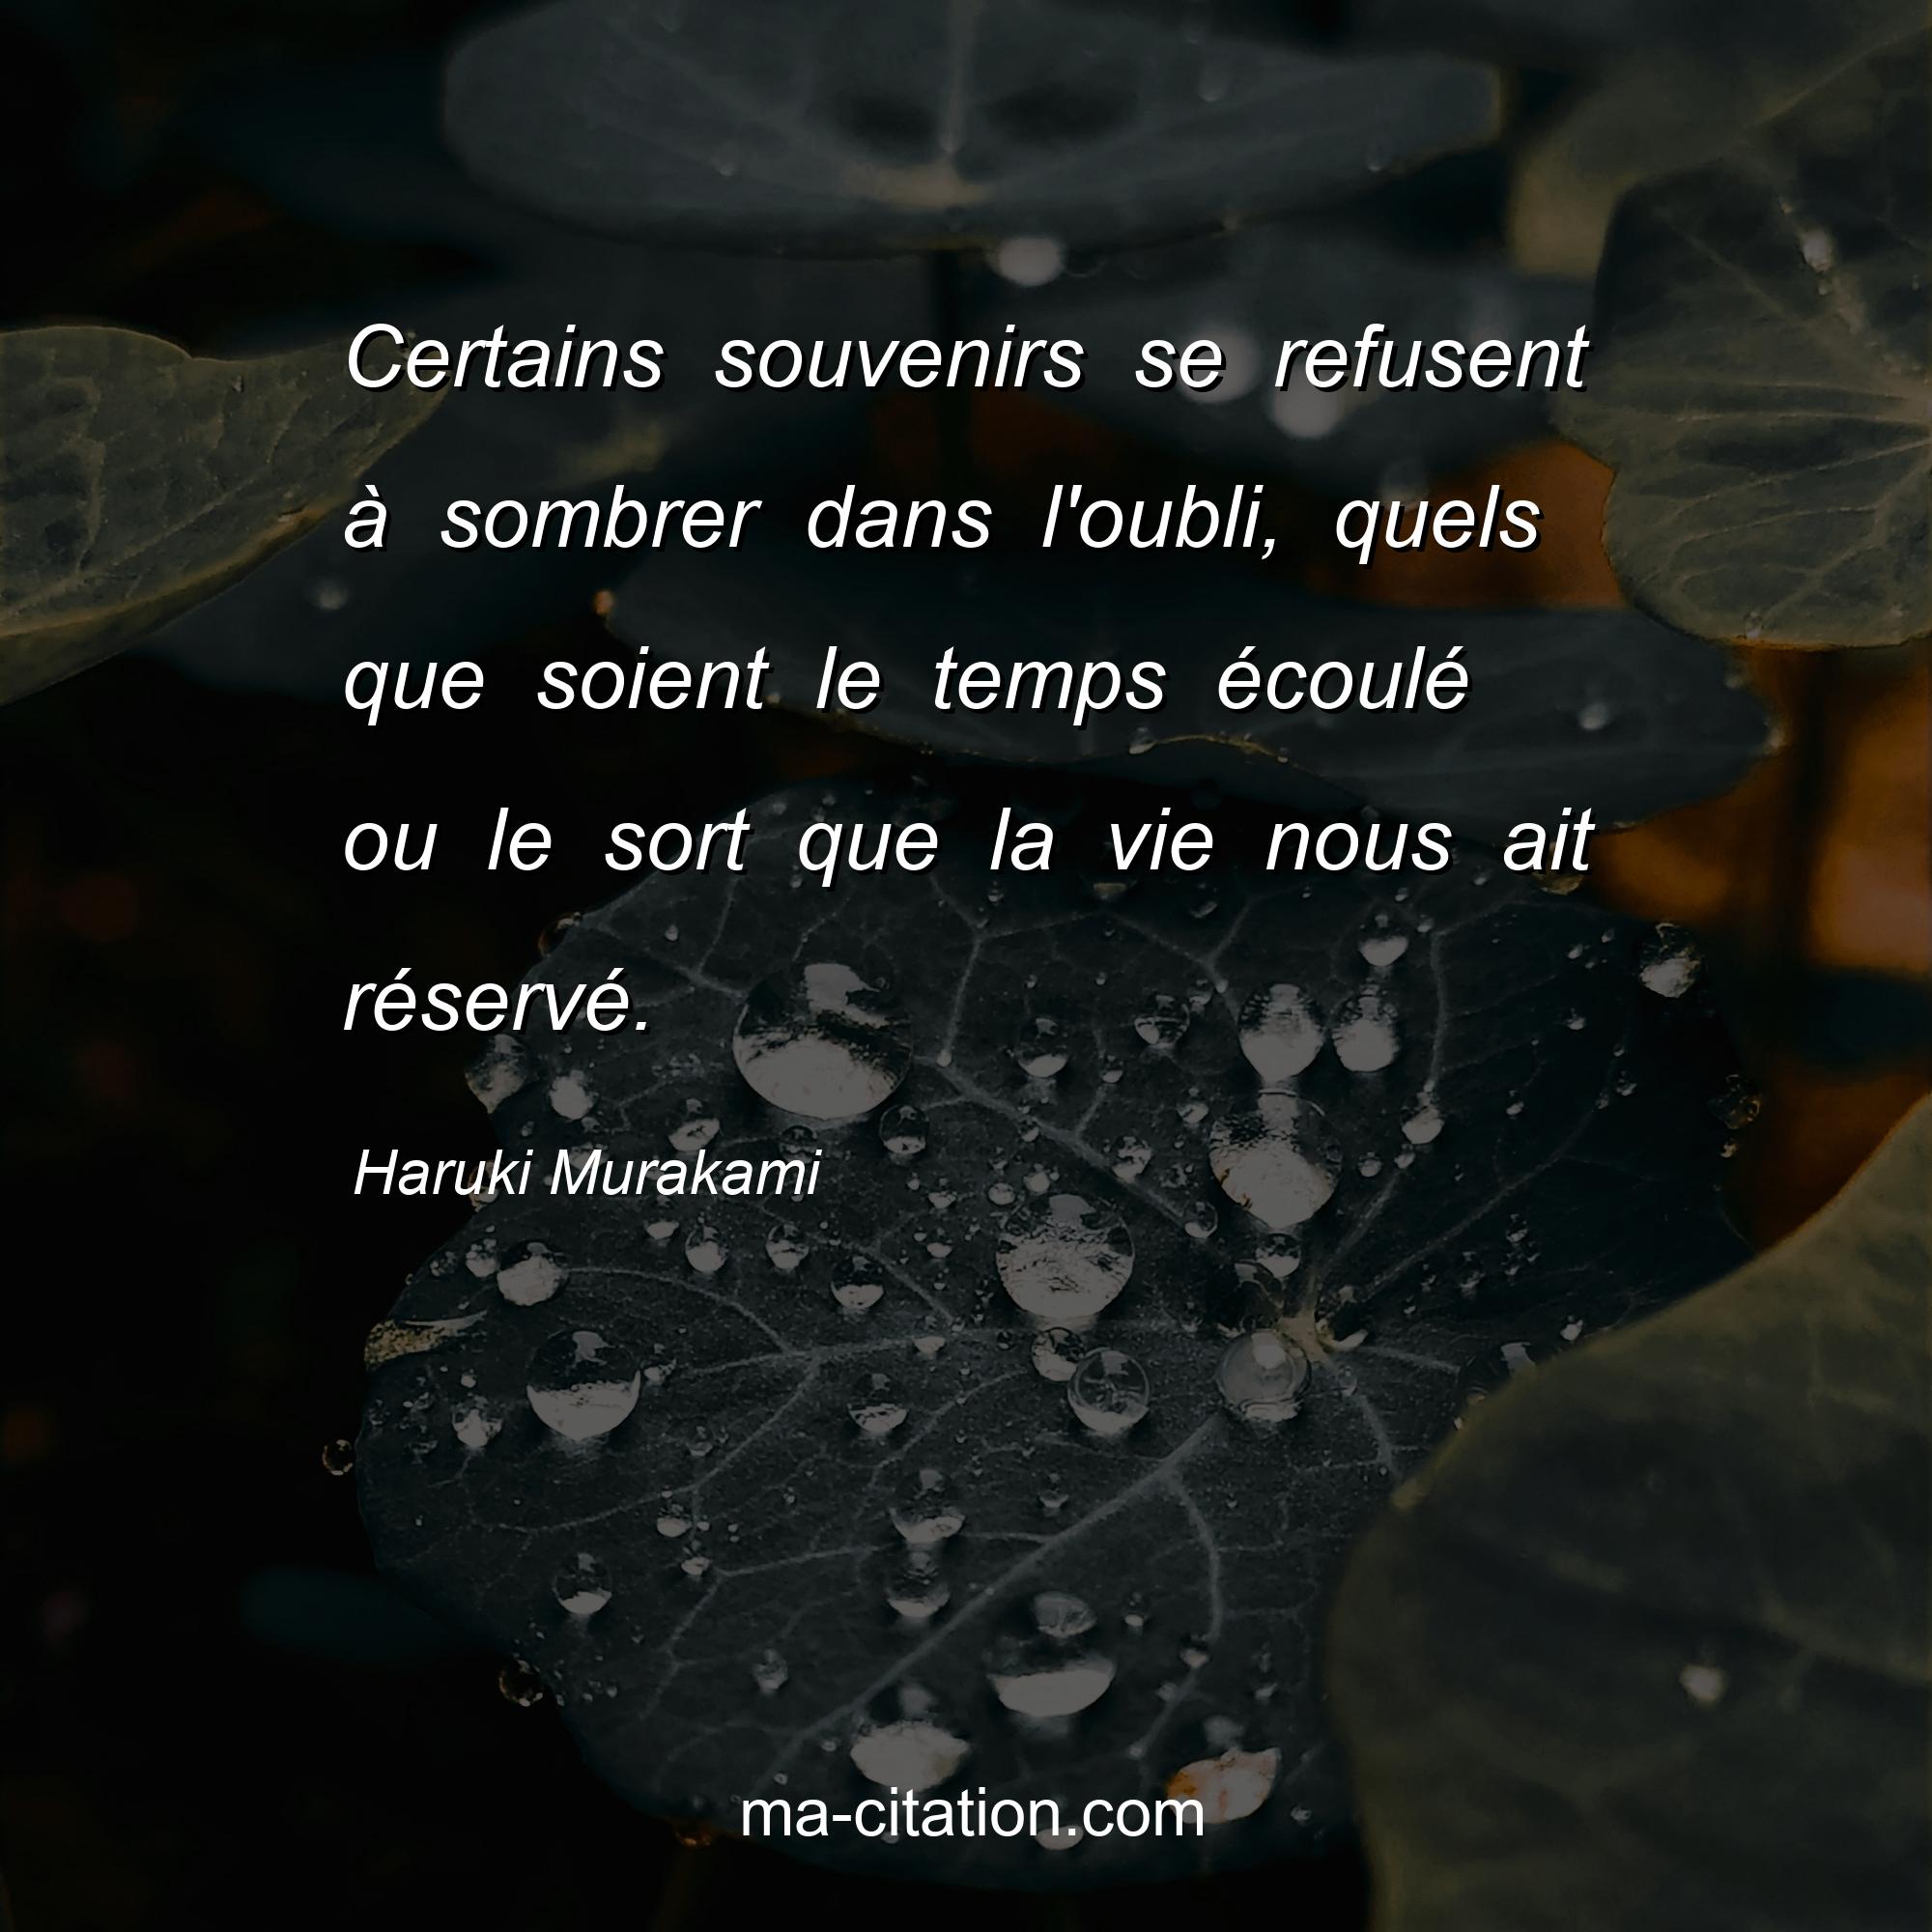 Haruki Murakami : Certains souvenirs se refusent à sombrer dans l'oubli, quels que soient le temps écoulé ou le sort que la vie nous ait réservé.